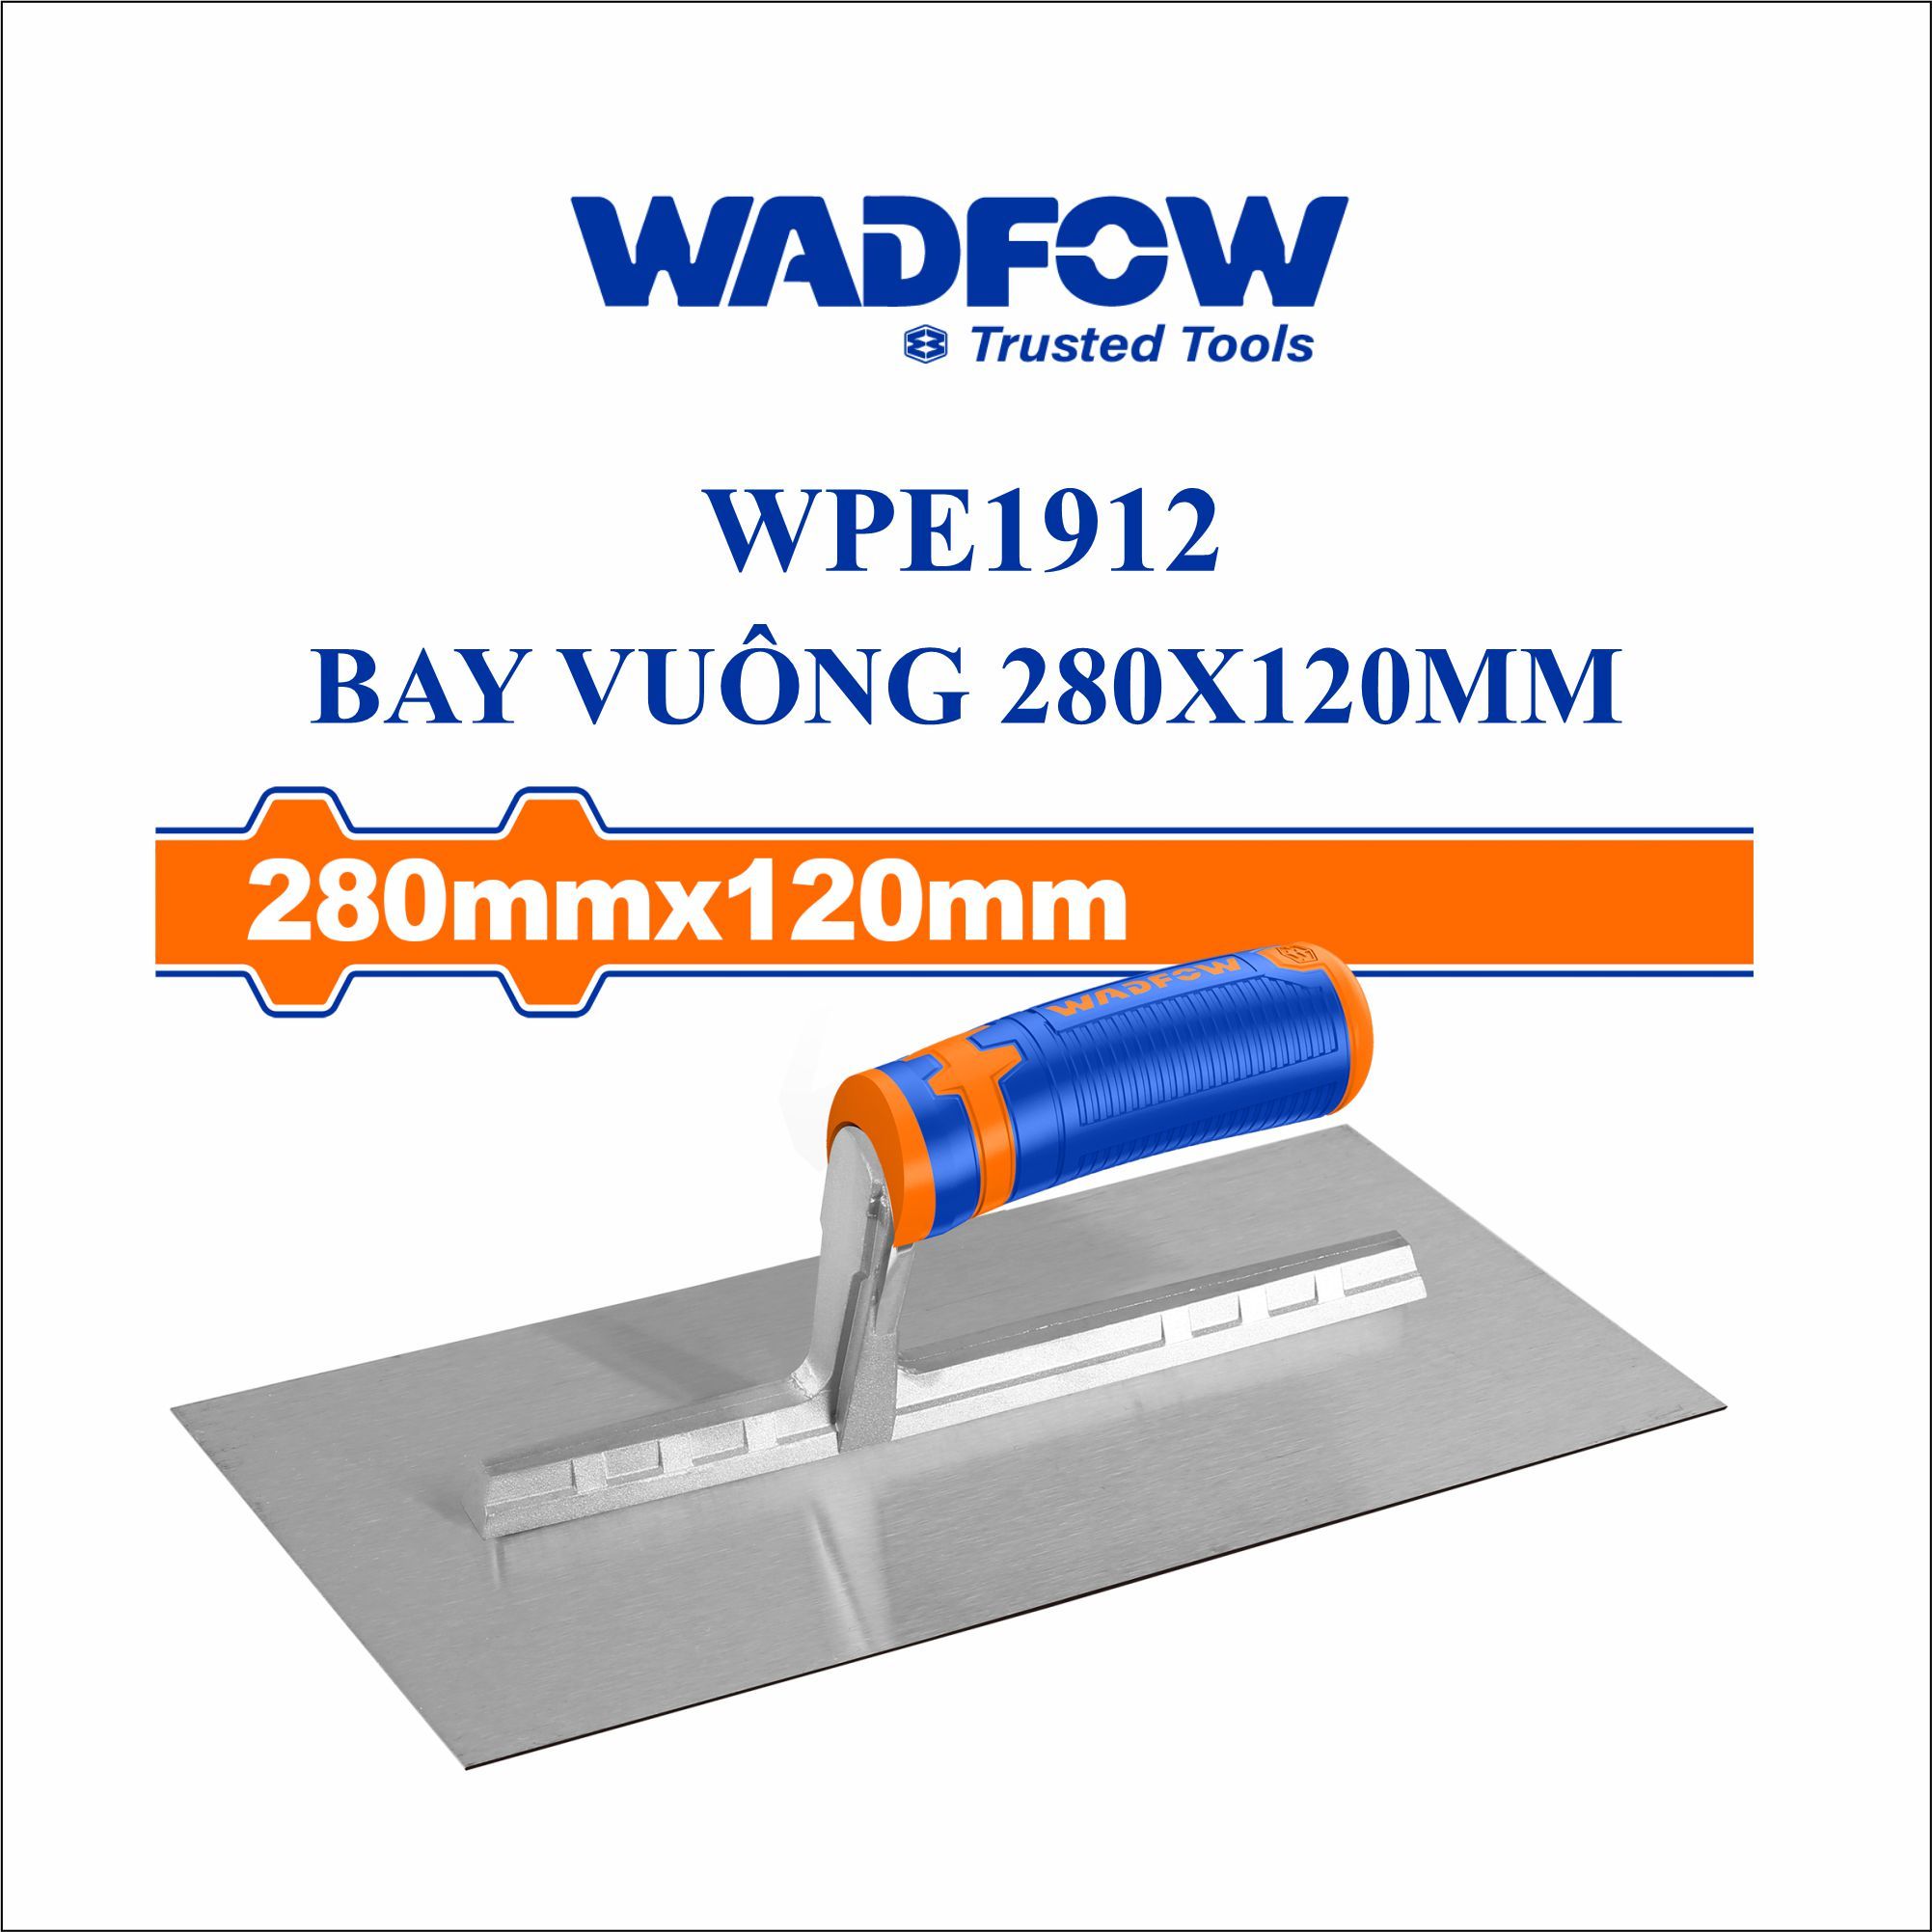  Bay vuông 280x120mm WADFOW WPE1912 